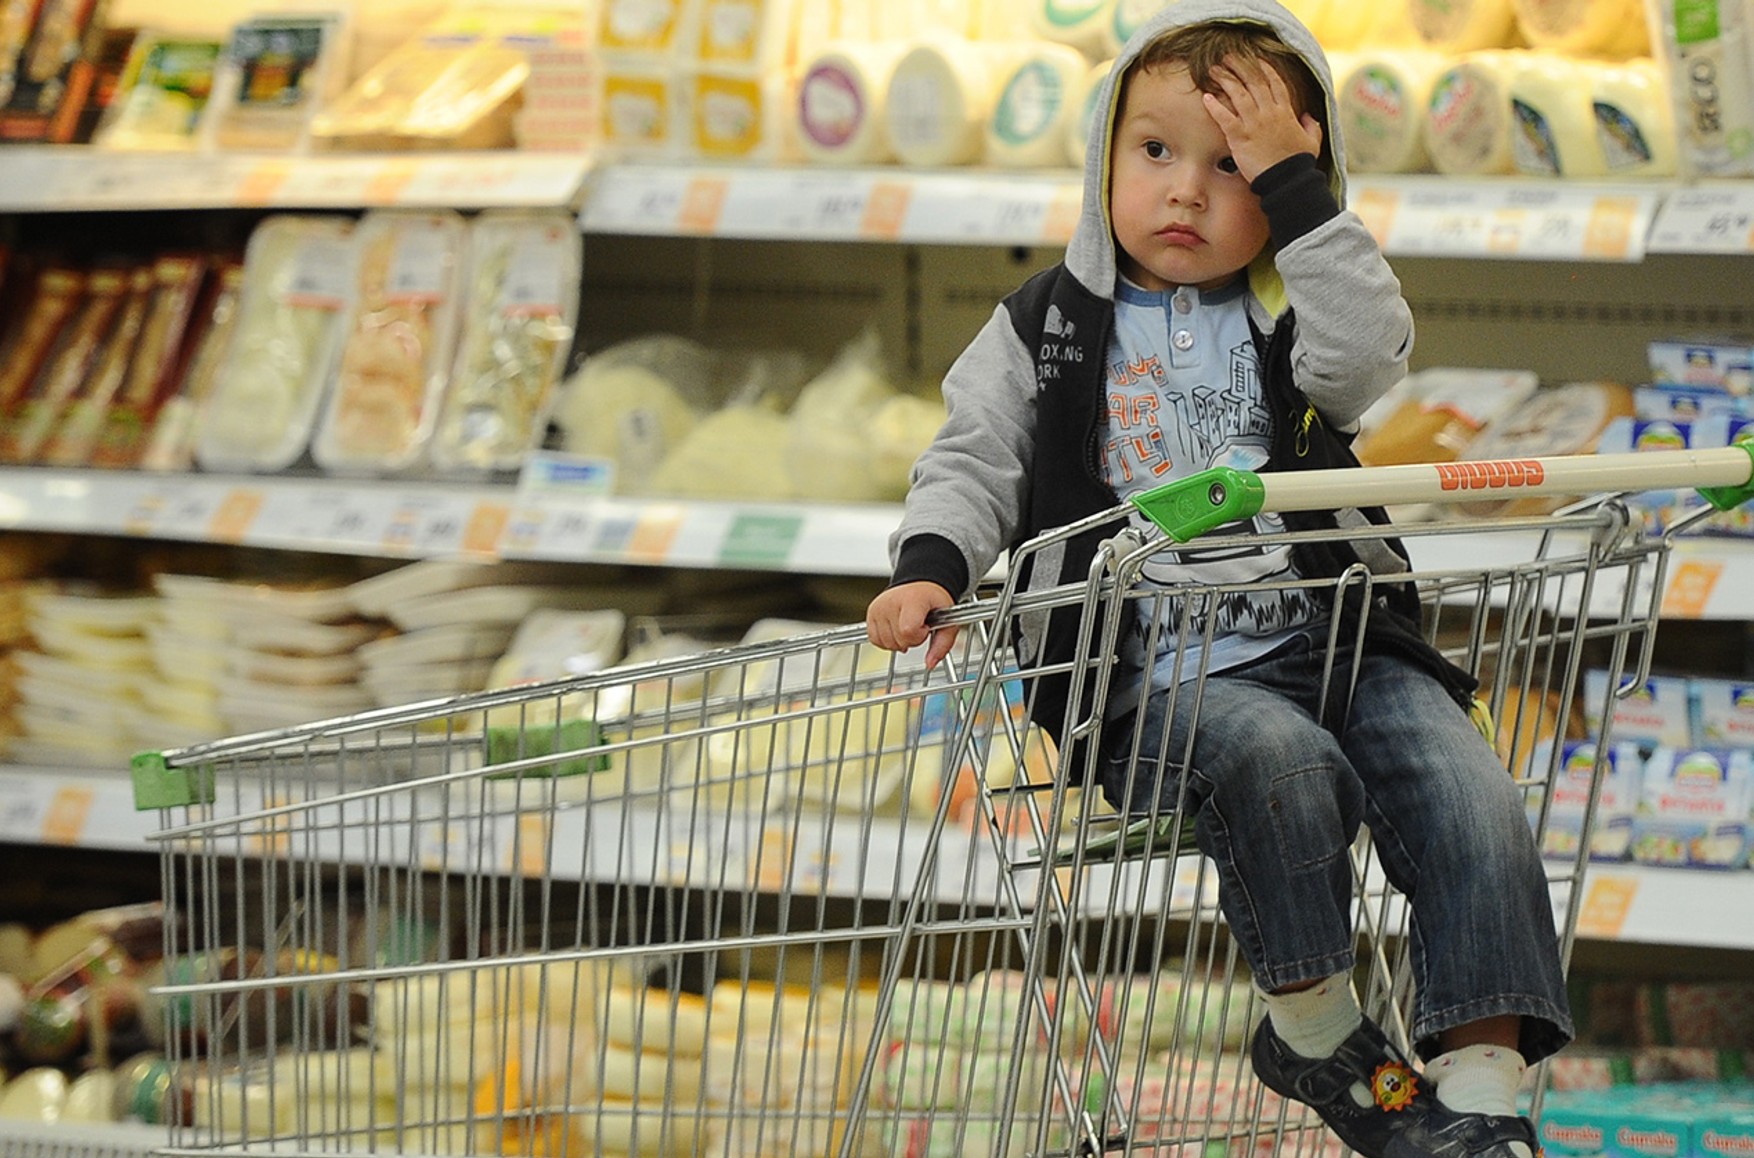 Росіяни витрачають на їжу майже 30% своїх доходів, це один з найвищих показників в Європі - дослідження